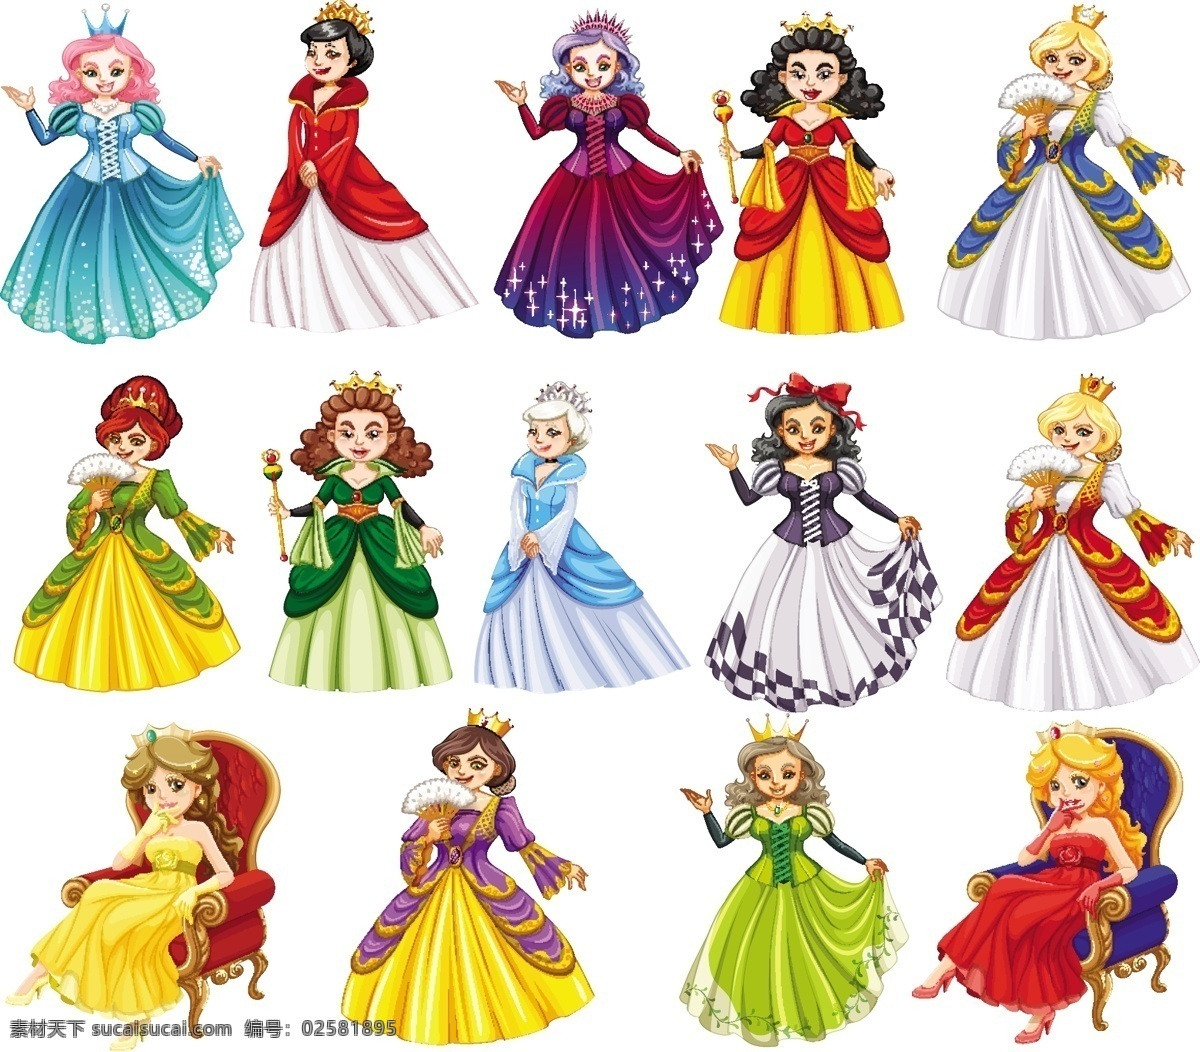 童话故事素材 迪士尼 公主 仙女 王子与公主 童话王子 人物 童话 中世纪 王子 皇家 城堡 王国 幻想 传说 历史 卡通儿童 卡通设计